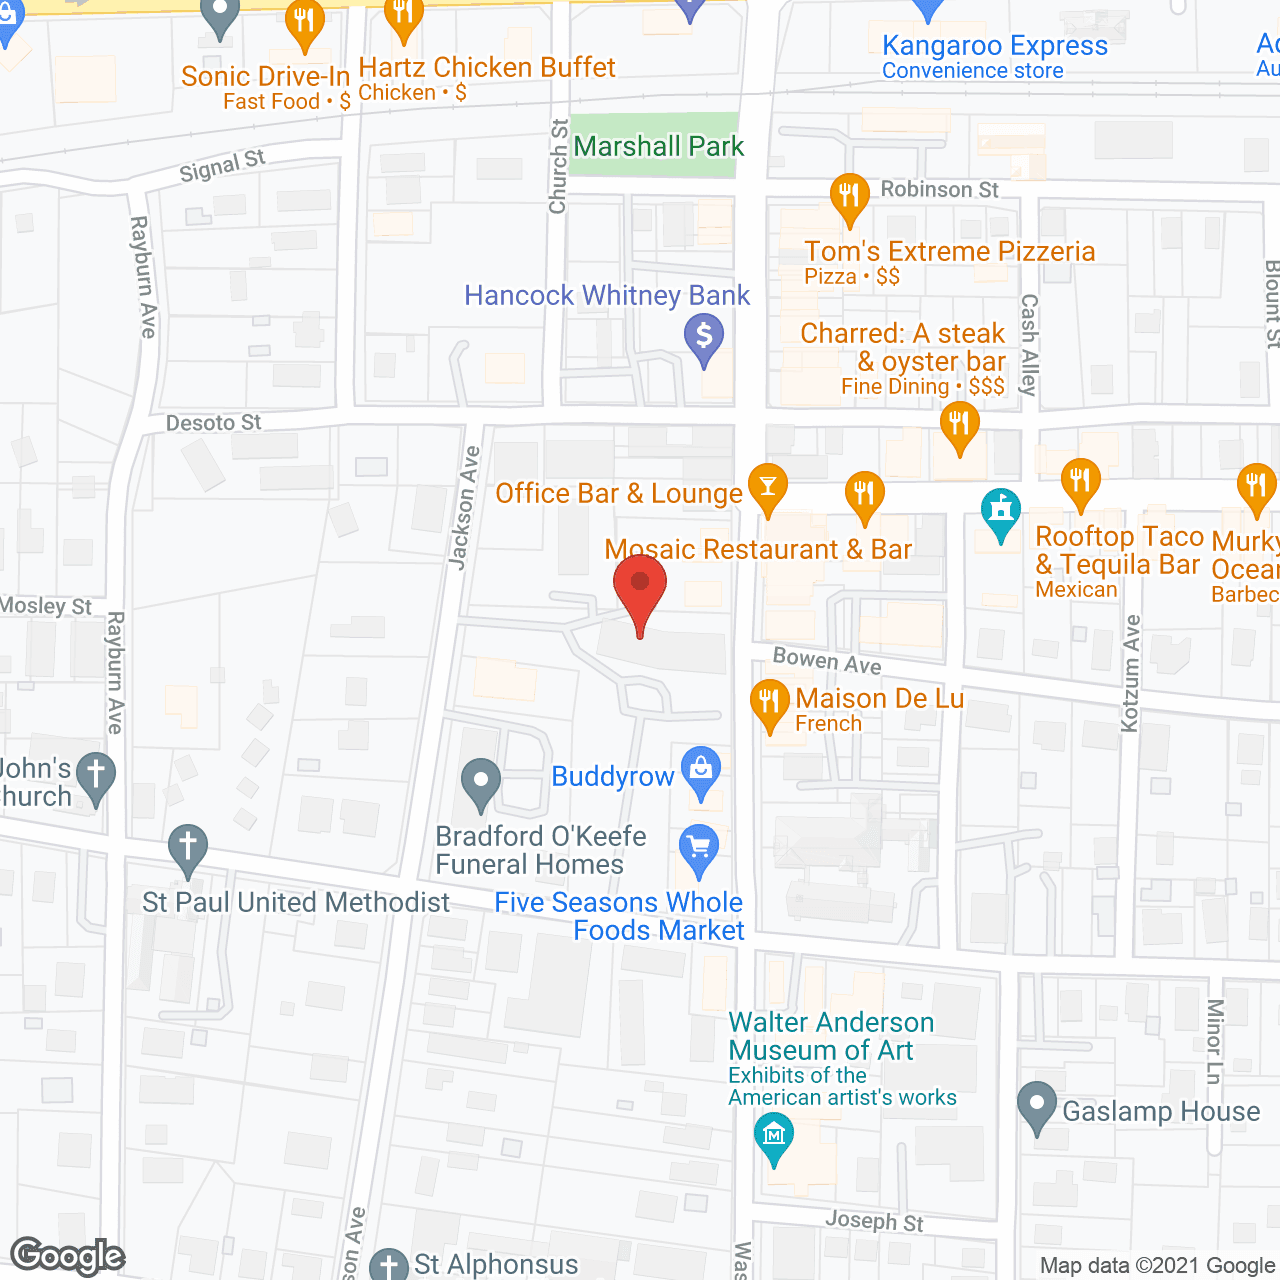 Villa Maria Apartments in google map